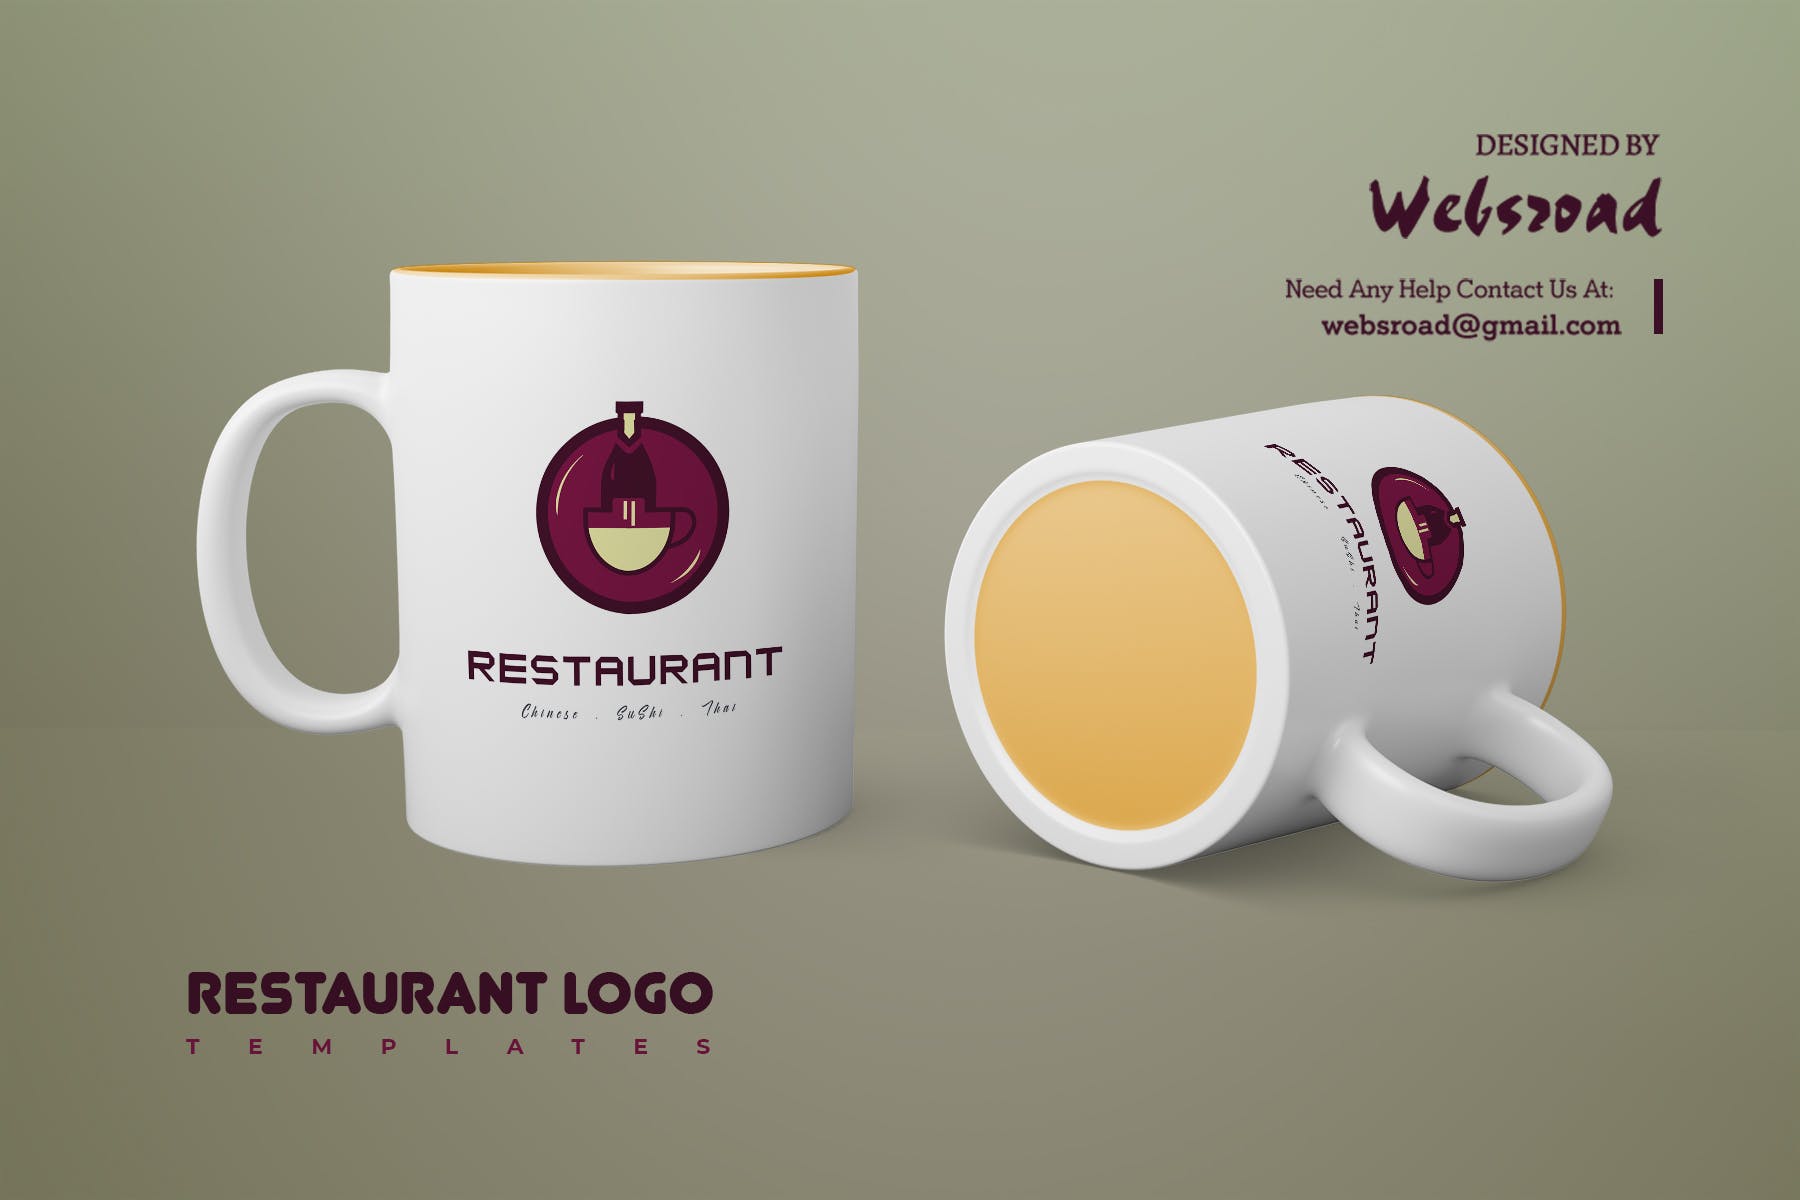 餐馆定制Logo设计素材库精选模板 Restaurant Logo Templates插图